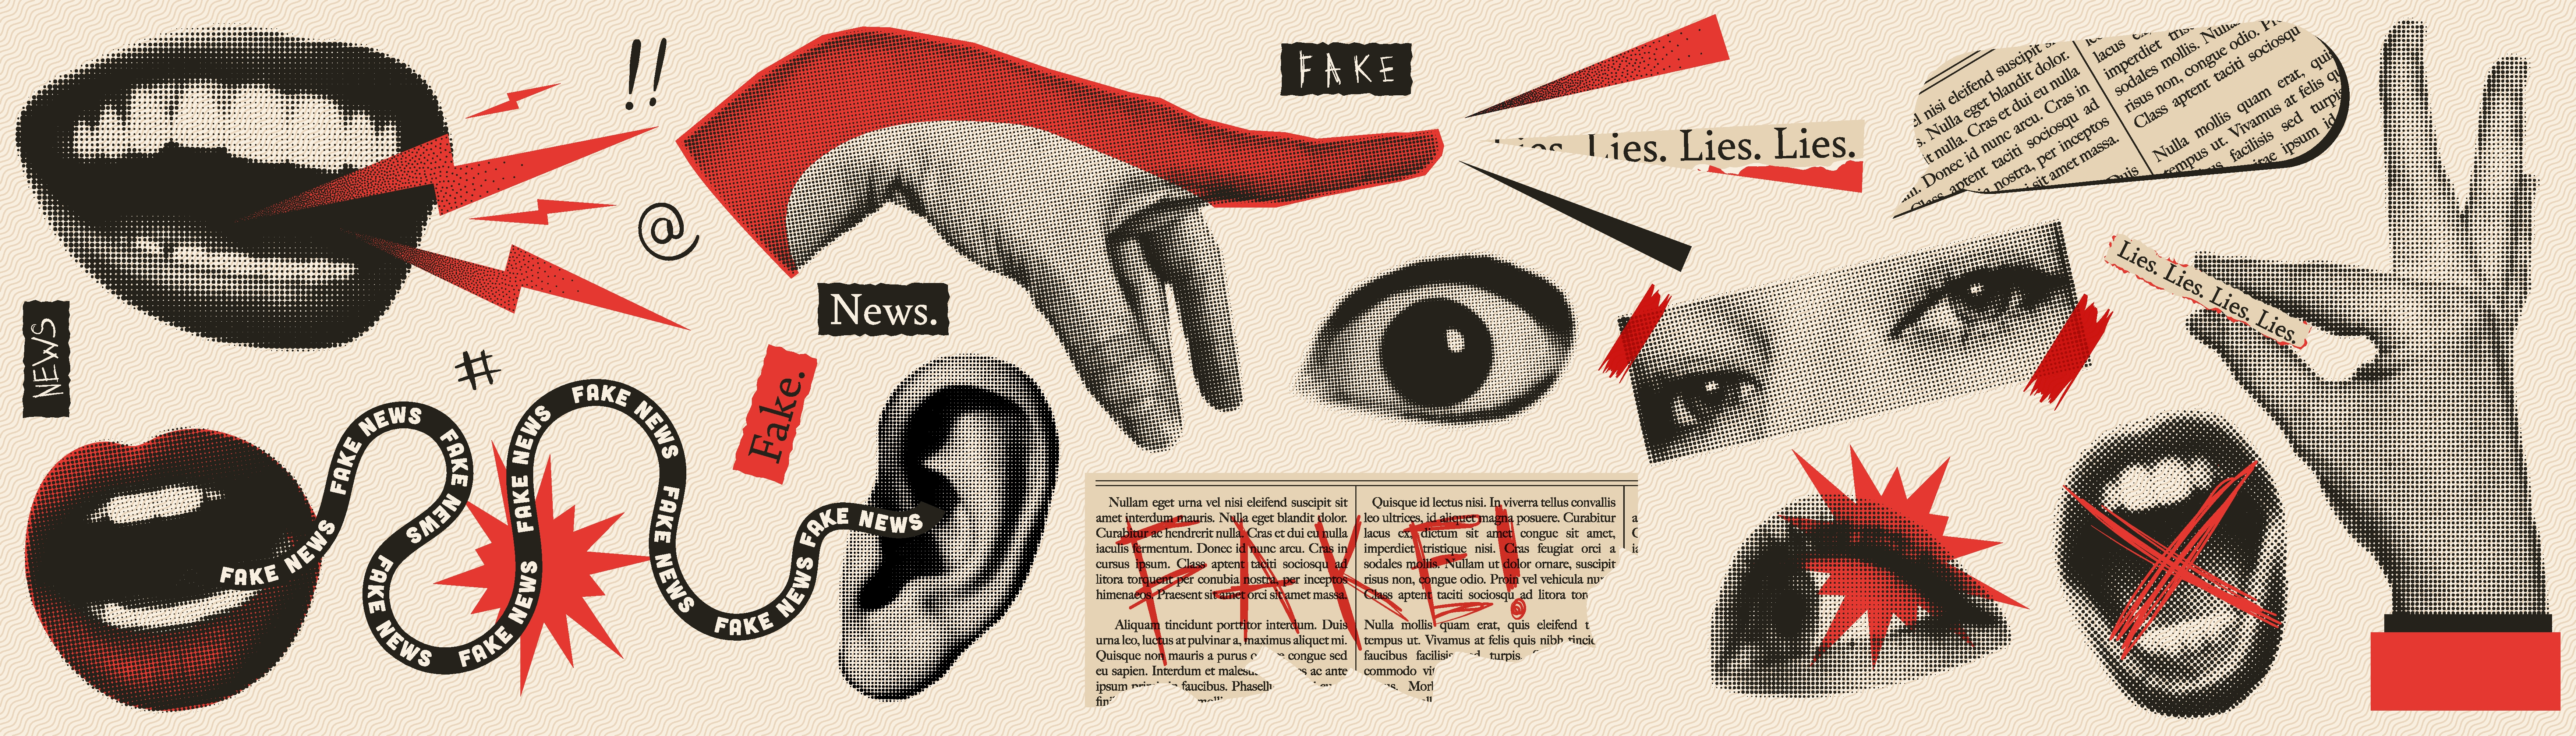 Illustrasjon viser øyne, munner, pekende fingre, ordet "fake" 